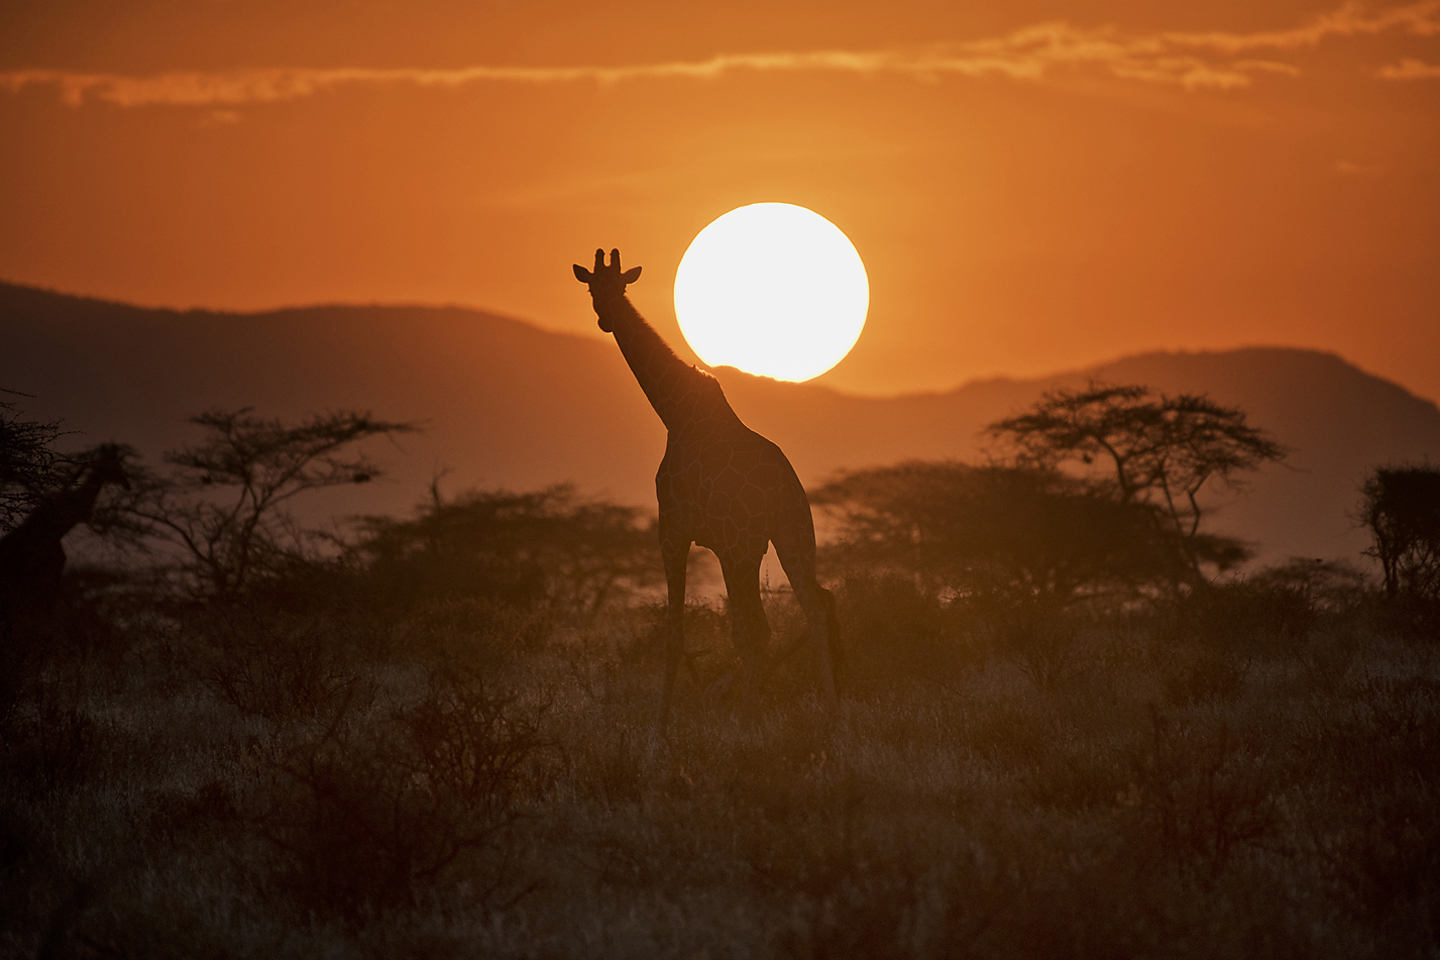 Layne Kennedy-Giraffe Samburu-Kenya_LCK2160.jpg